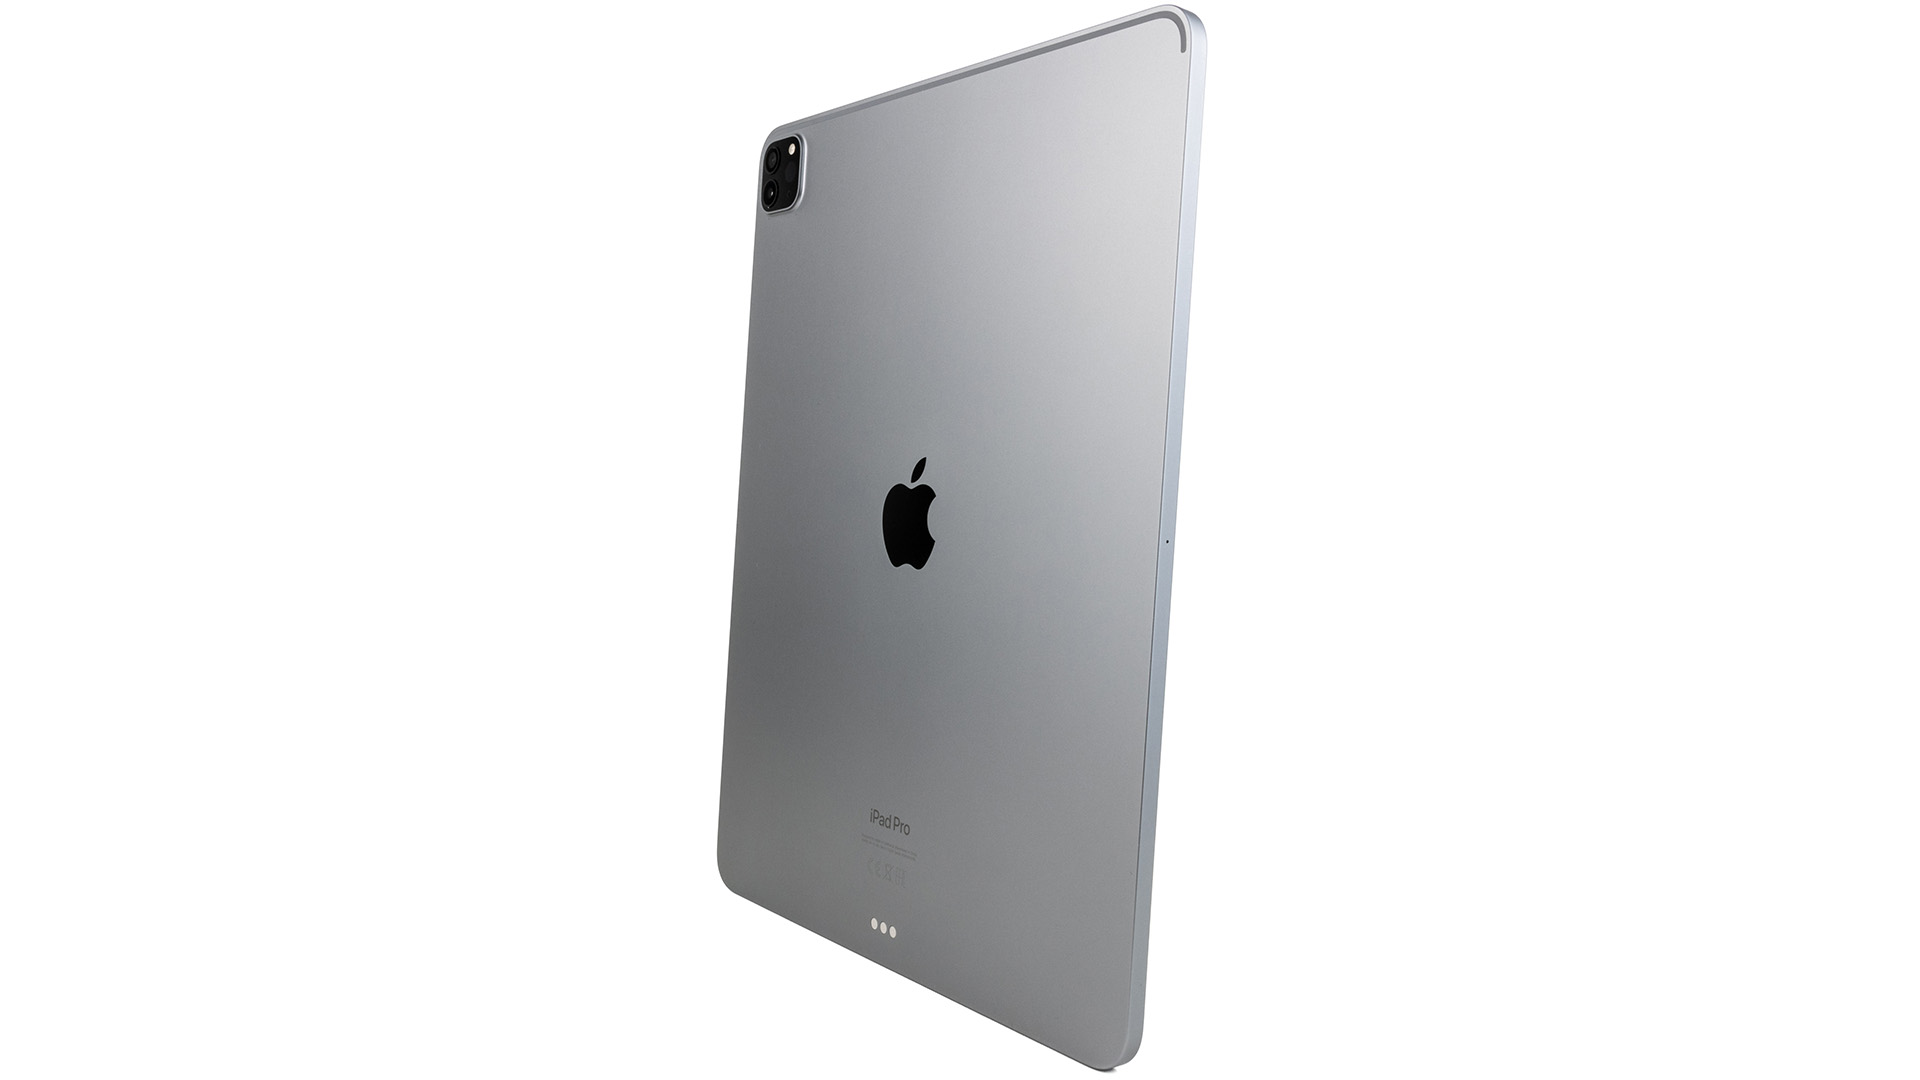 Galaxy Tab S Pro : une tablette 12 pouces pour contrer l'iPad Pro avant sa  sortie ?